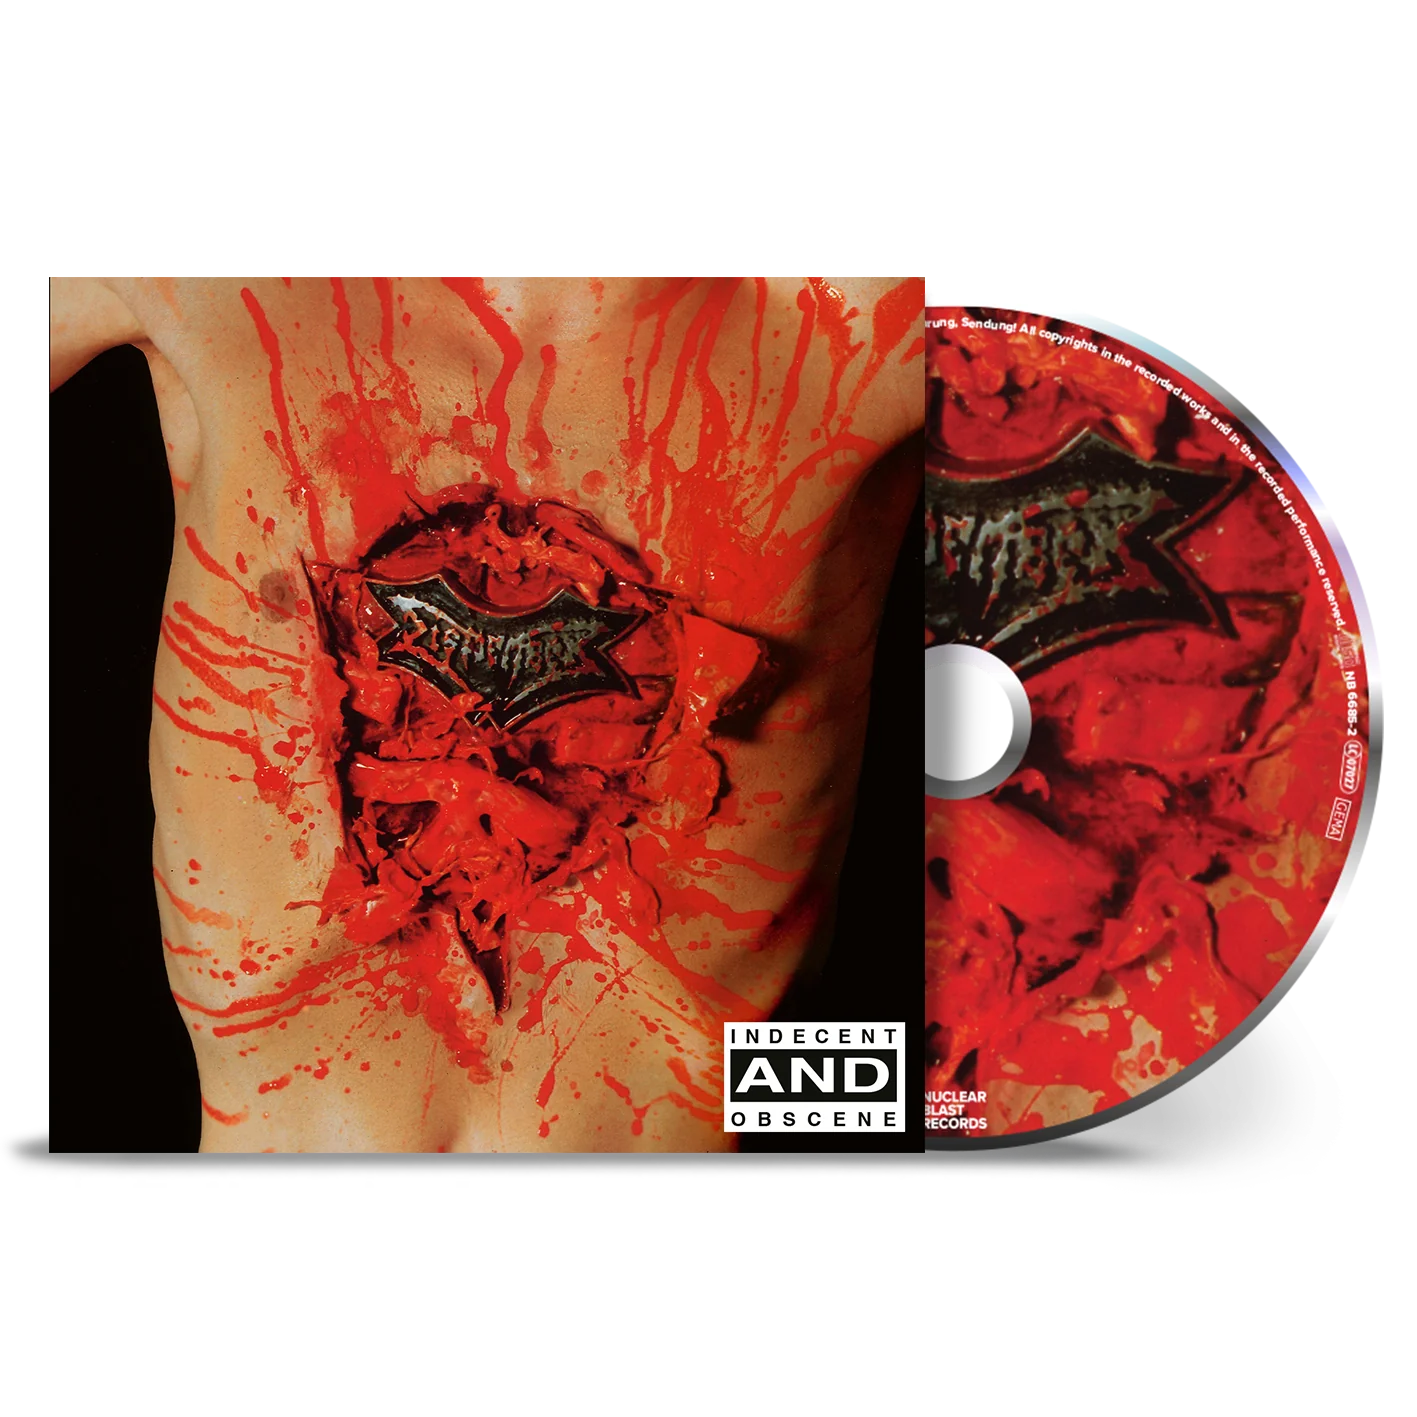 Dismember - Indecent and Obscene CD